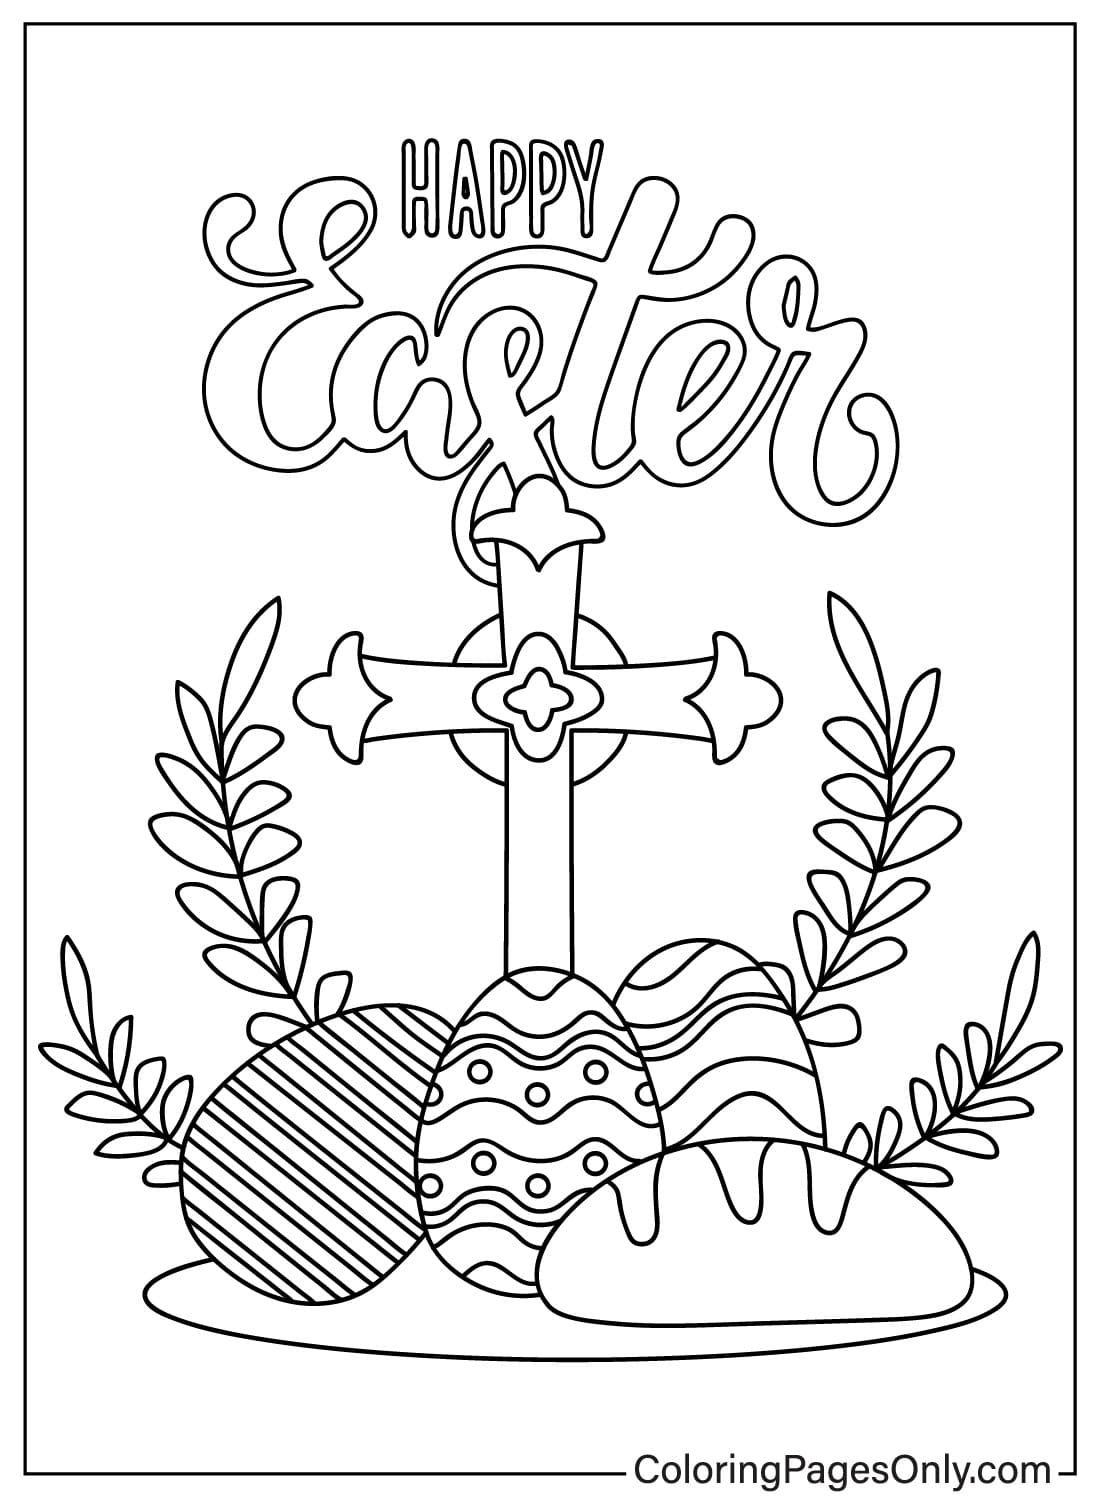 Página para colorear de la Cruz de Pascua para imprimir desde la Cruz de Pascua